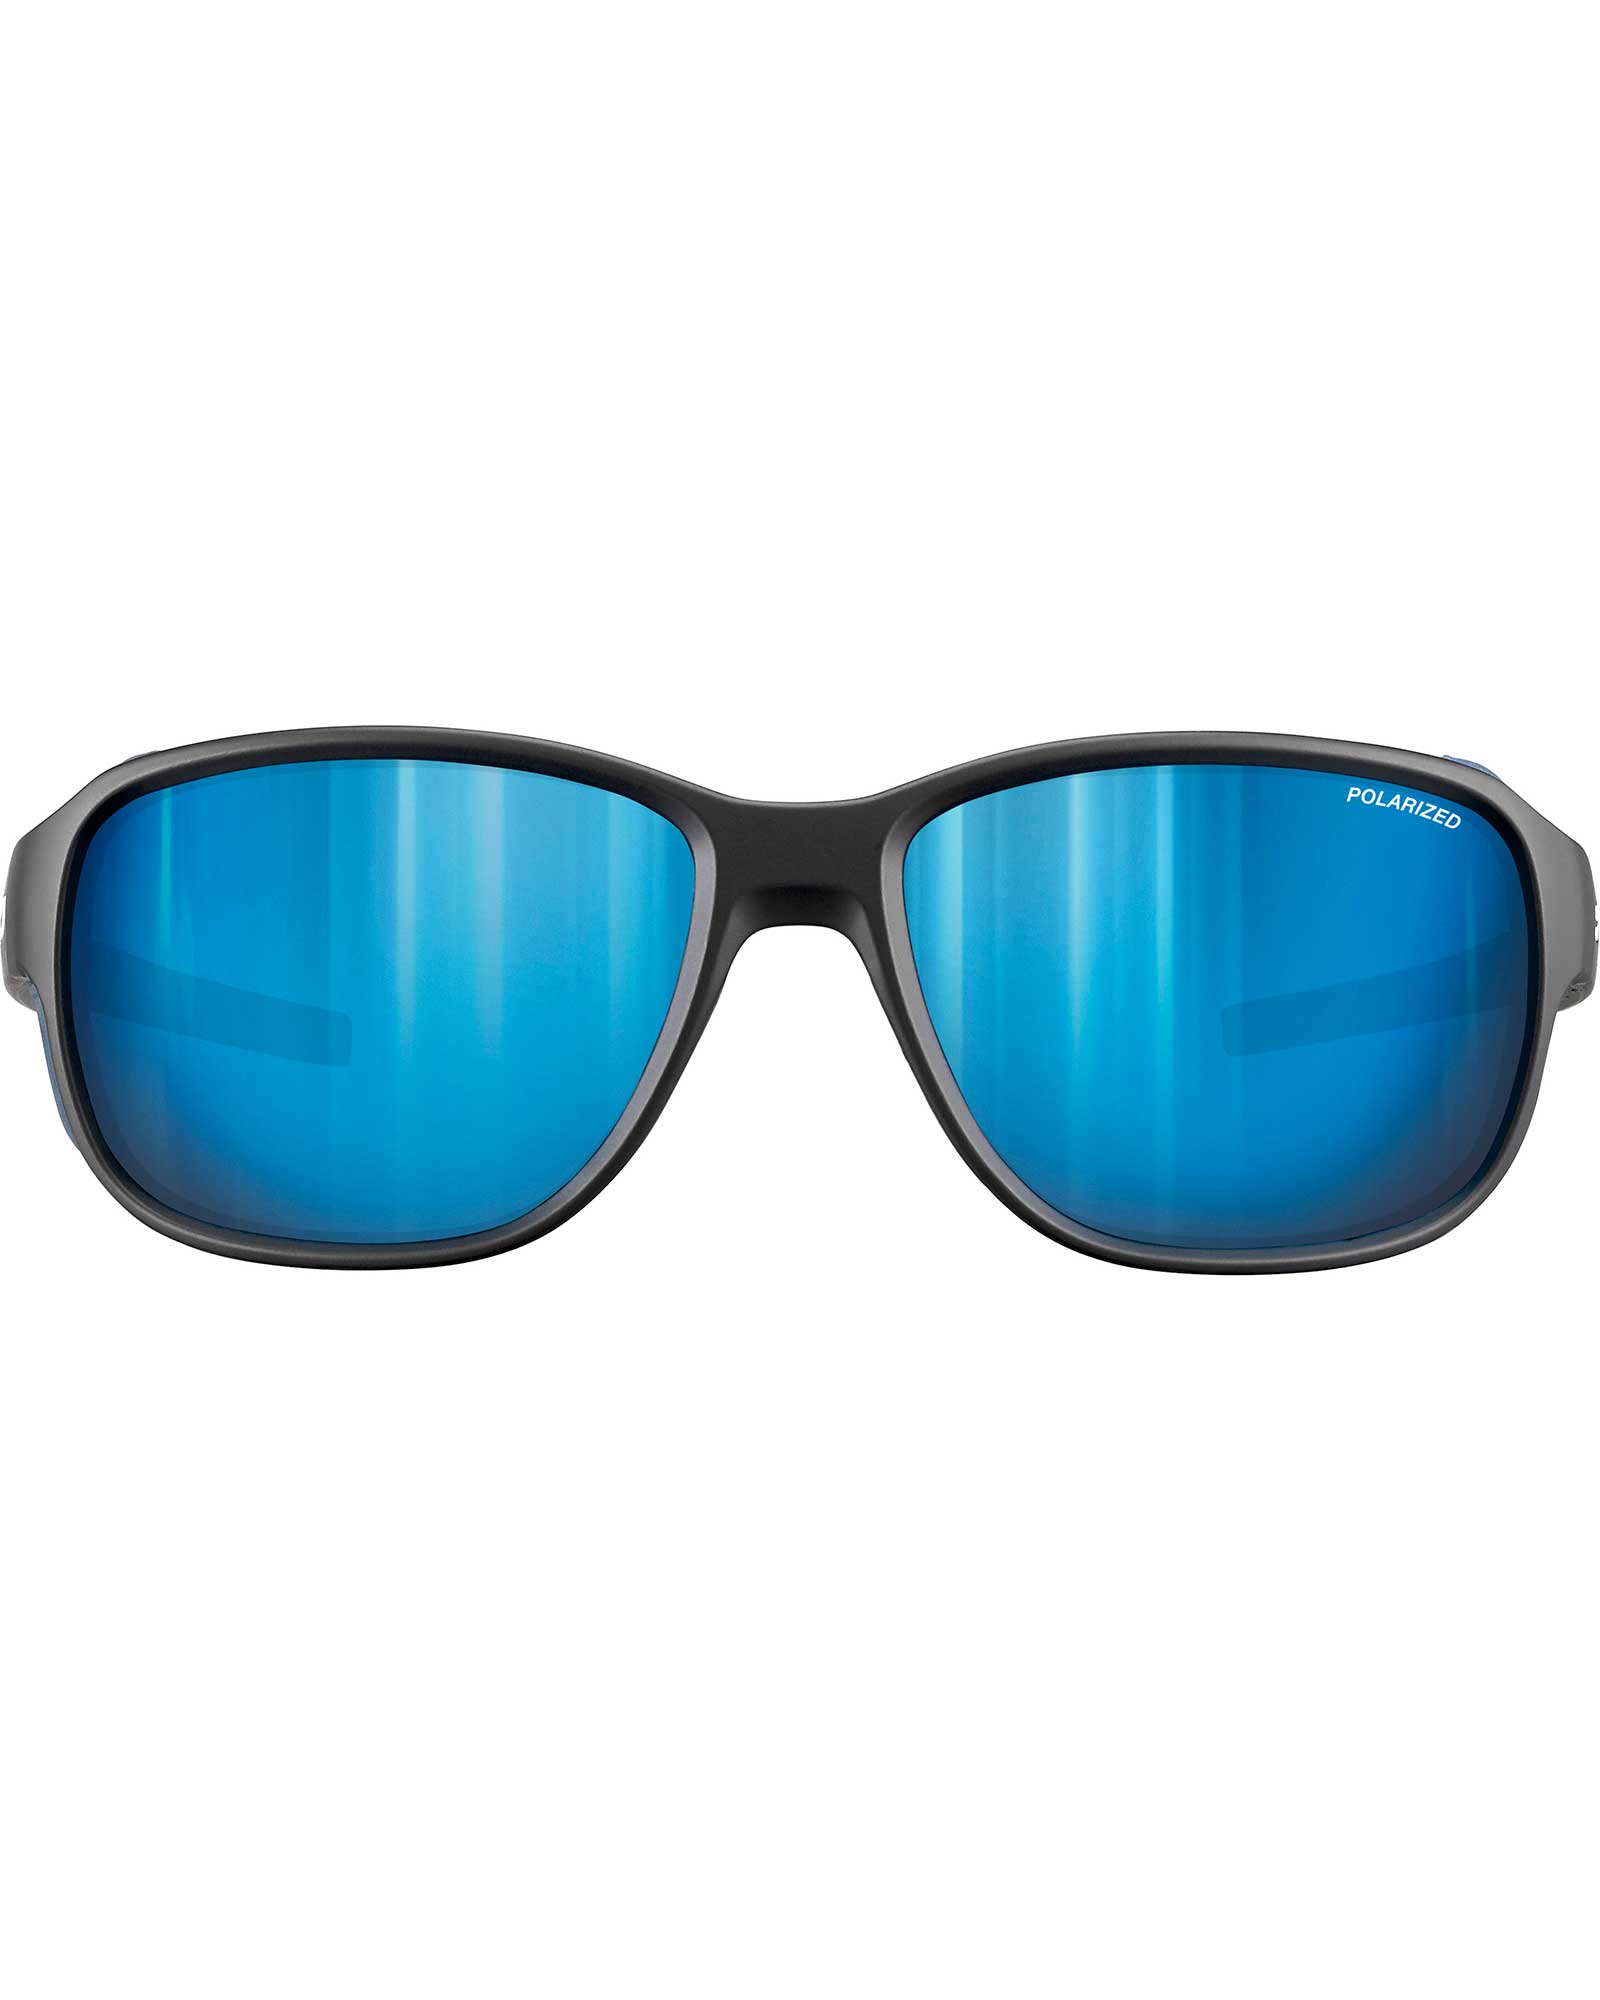 Julbo Montebianco 2 Matt Black/Blue/White / Spectron 3 Polarized Sunglasses - Matt Black/Blue/White